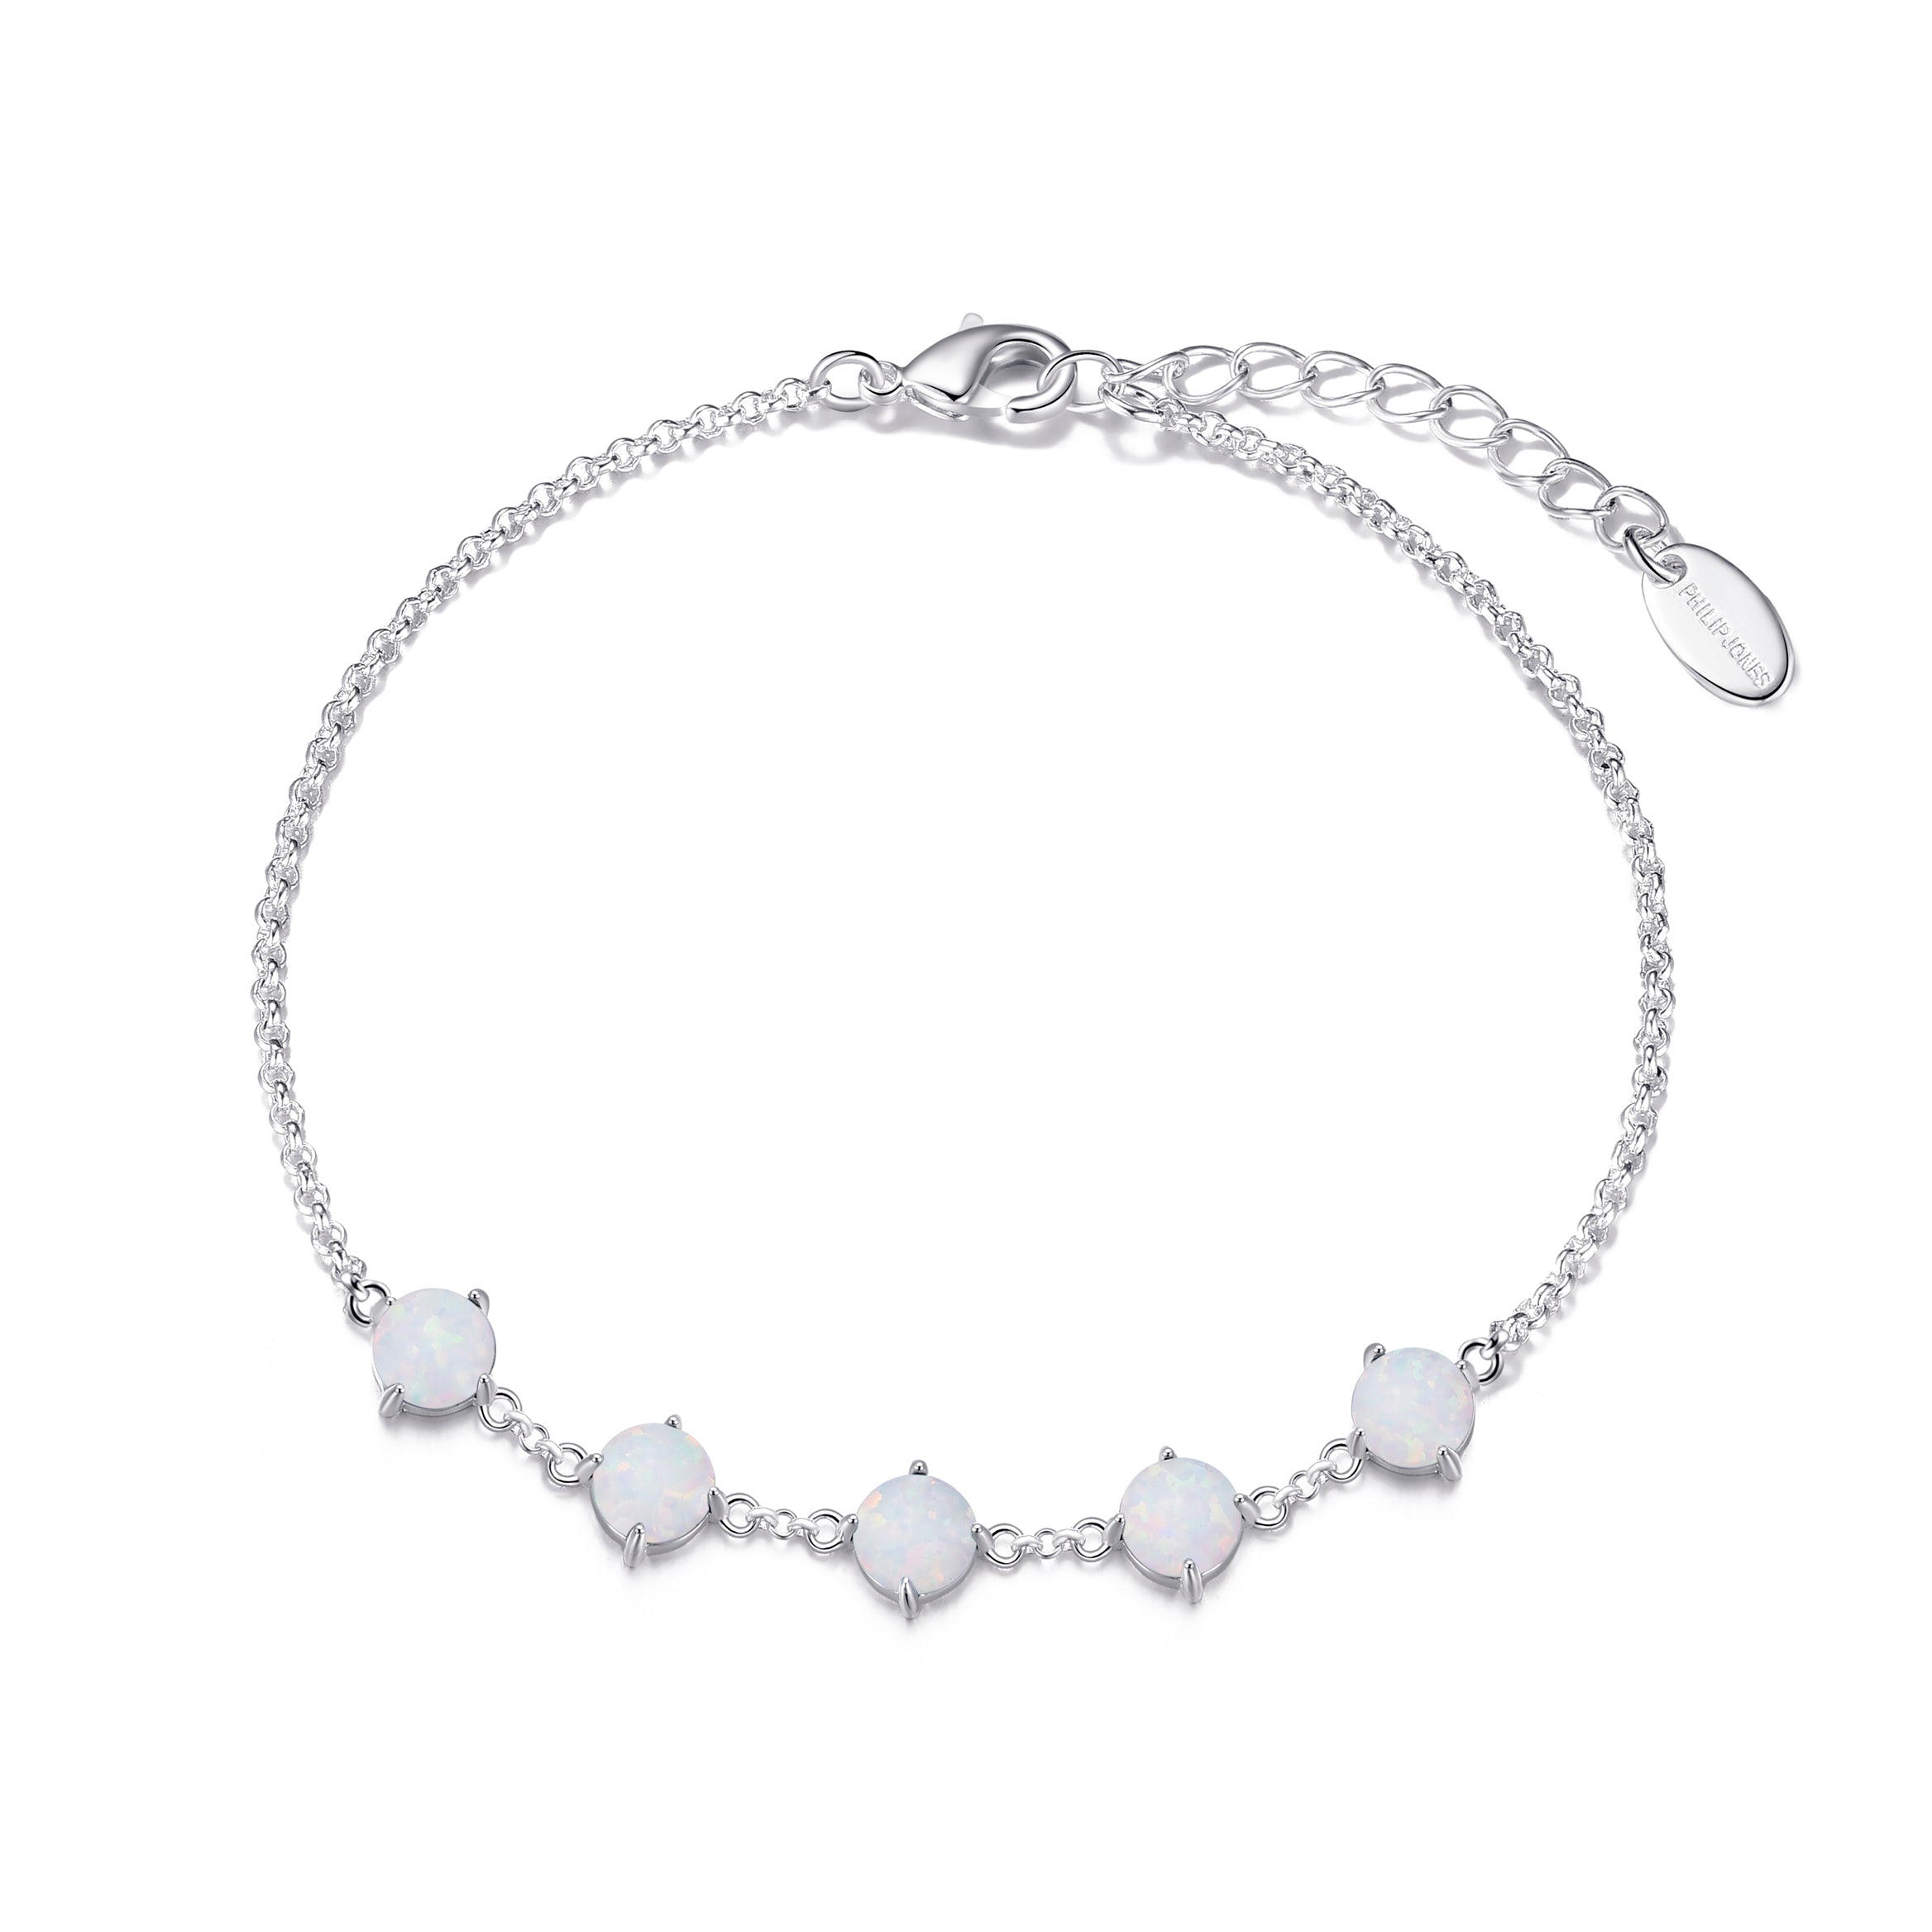 Synthetic White Opal Gemstone Bracelet by Philip Jones Jewellery